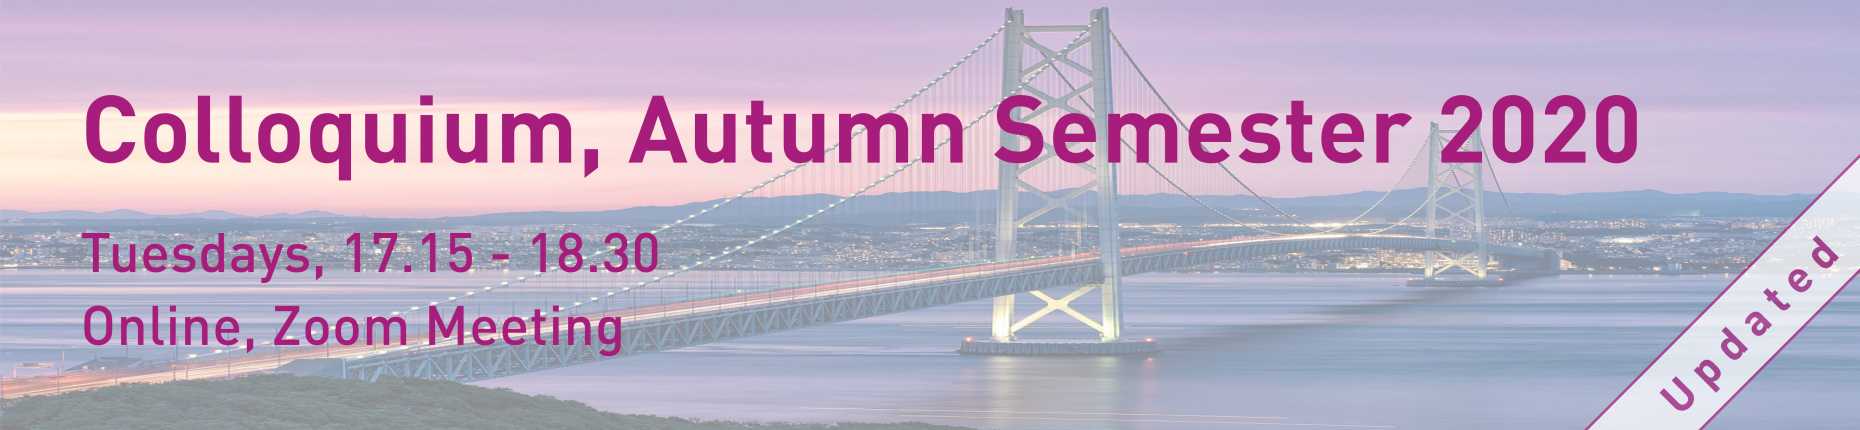 Colloquium Autumn Semester 2020